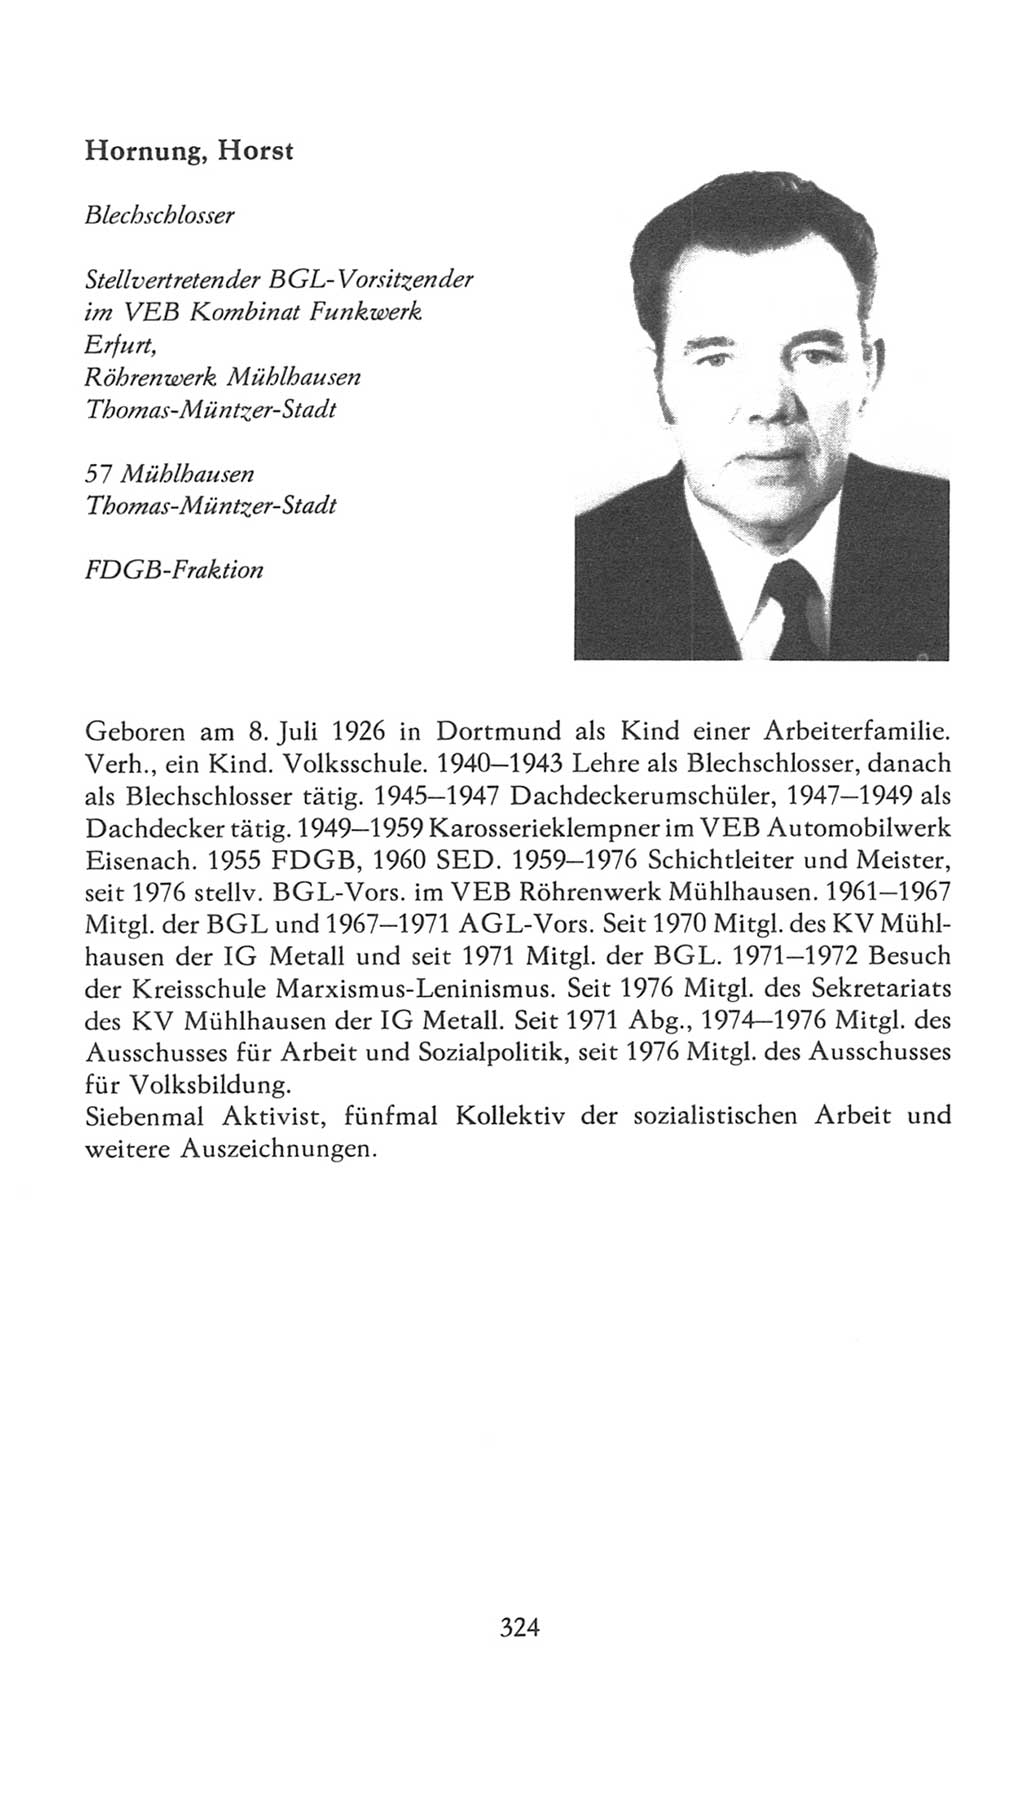 Volkskammer (VK) der Deutschen Demokratischen Republik (DDR), 7. Wahlperiode 1976-1981, Seite 324 (VK. DDR 7. WP. 1976-1981, S. 324)